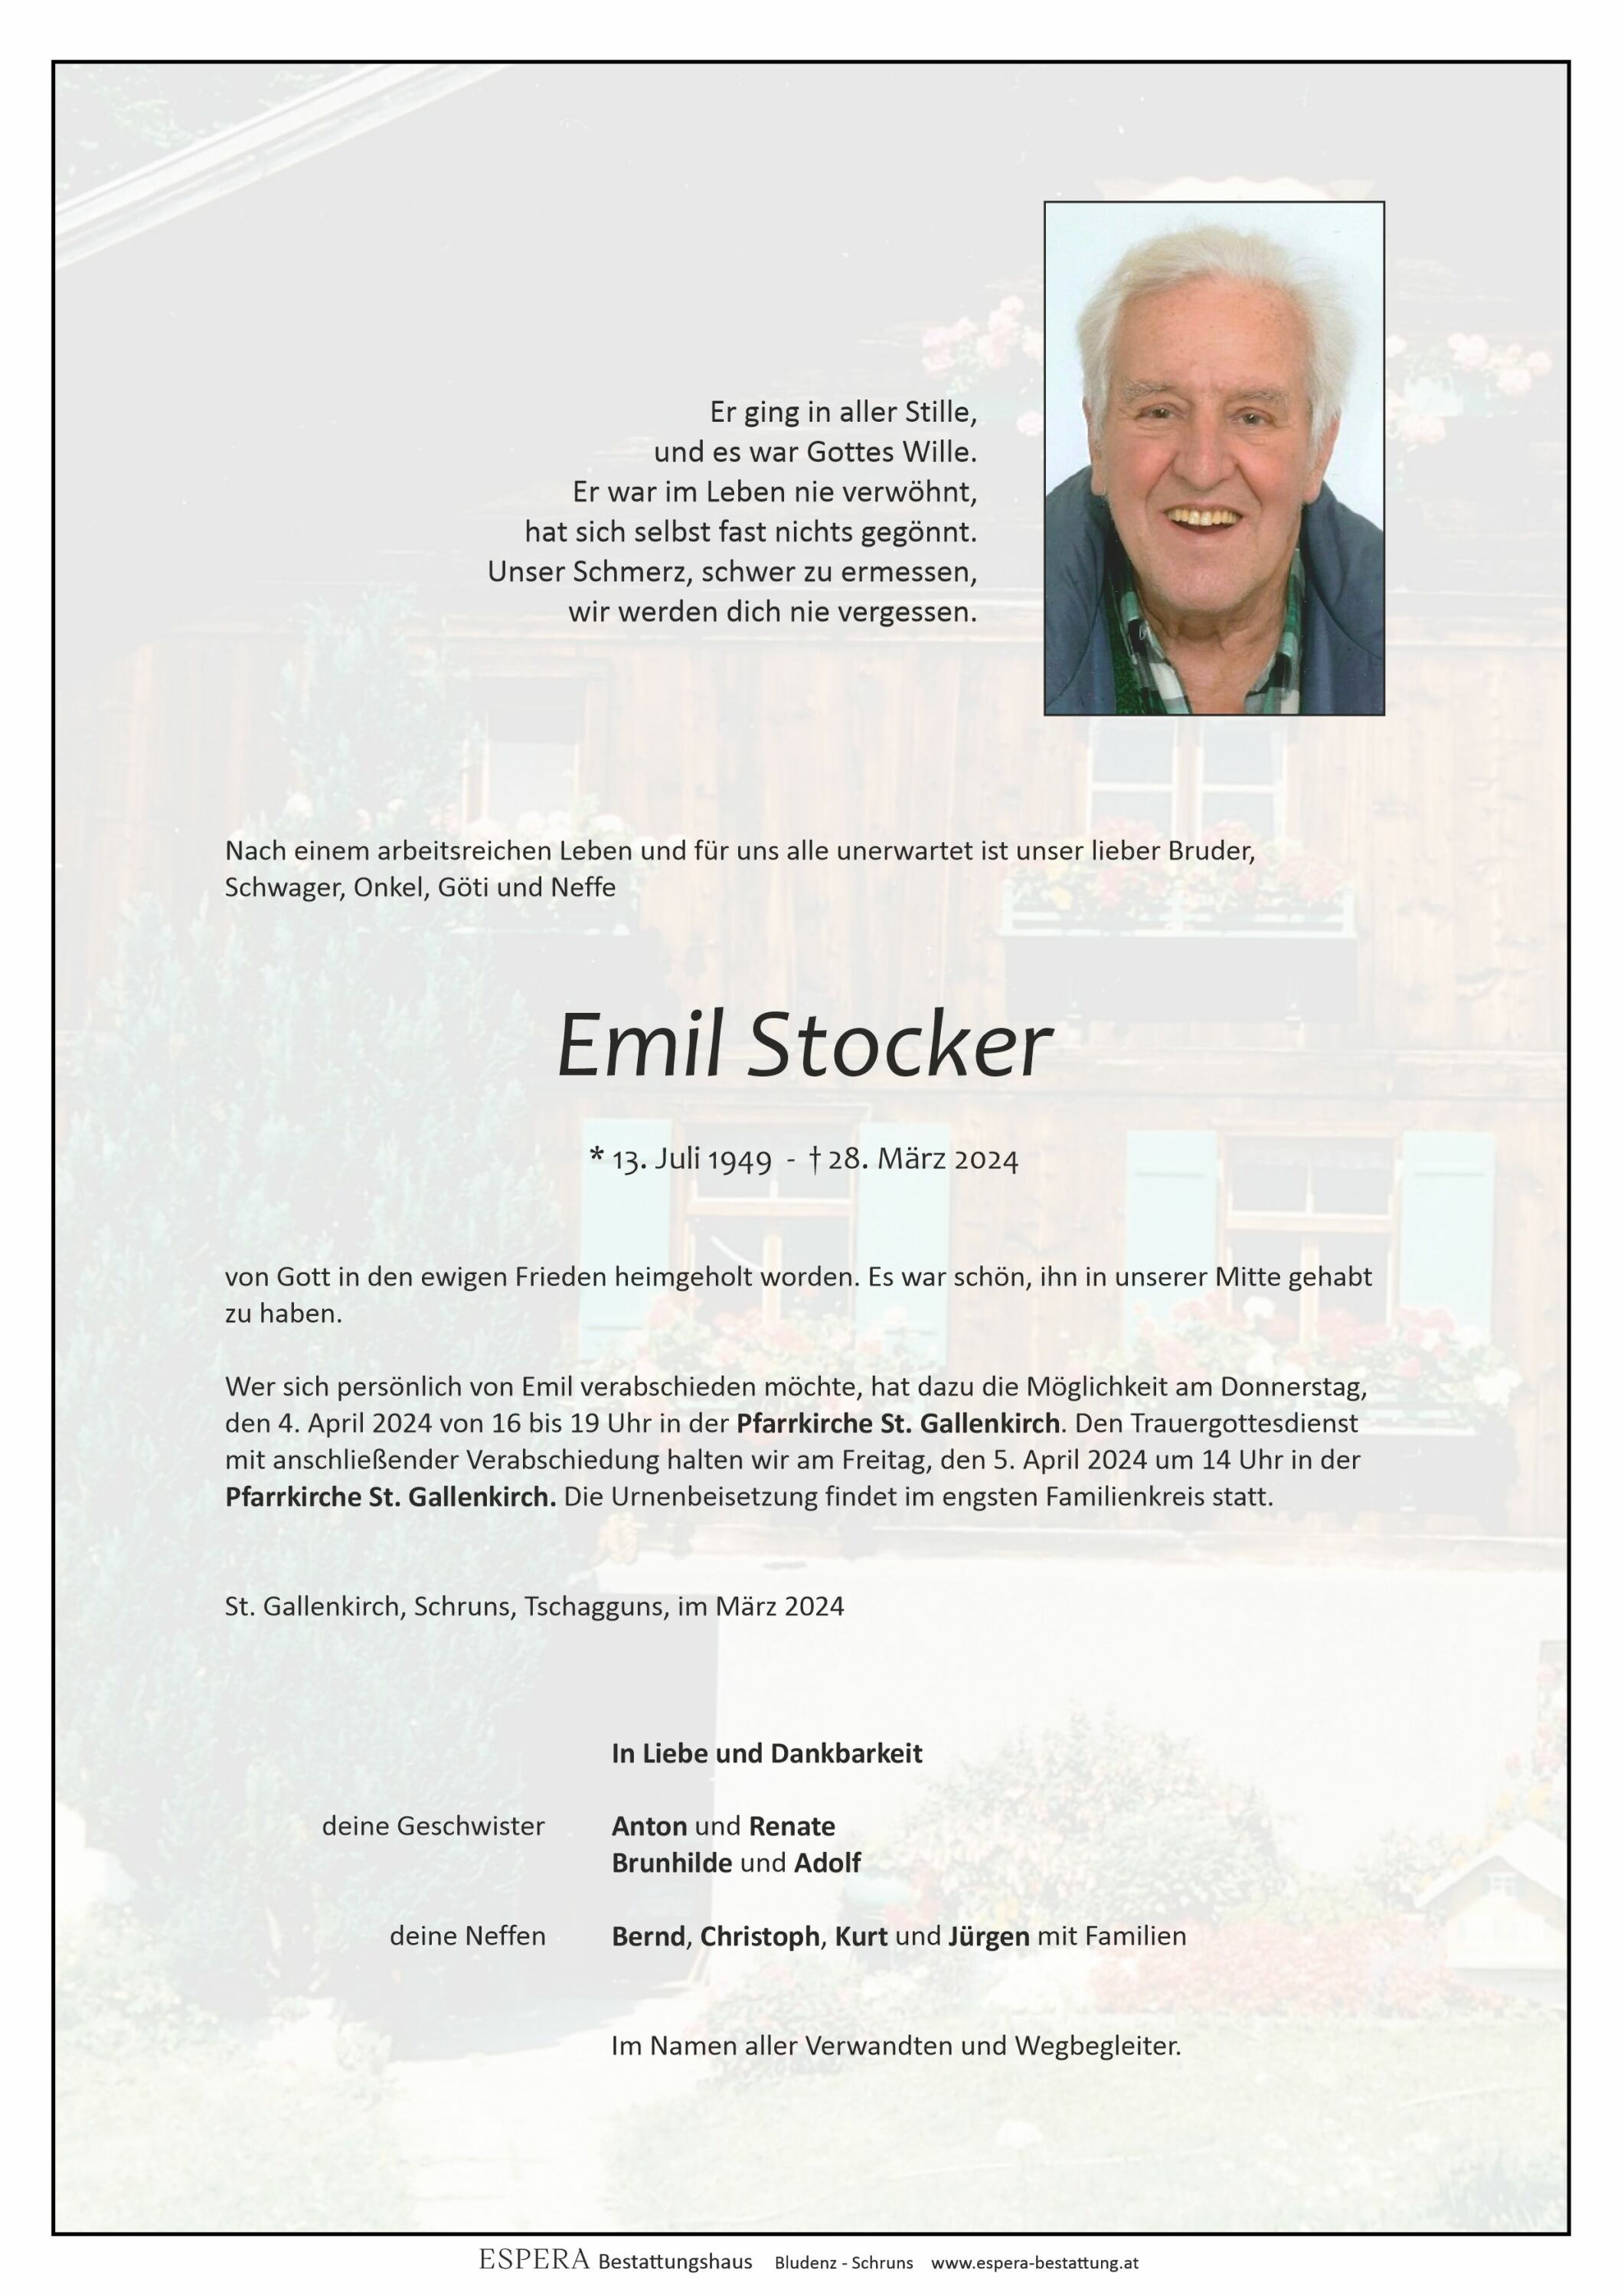 Emil Stocker